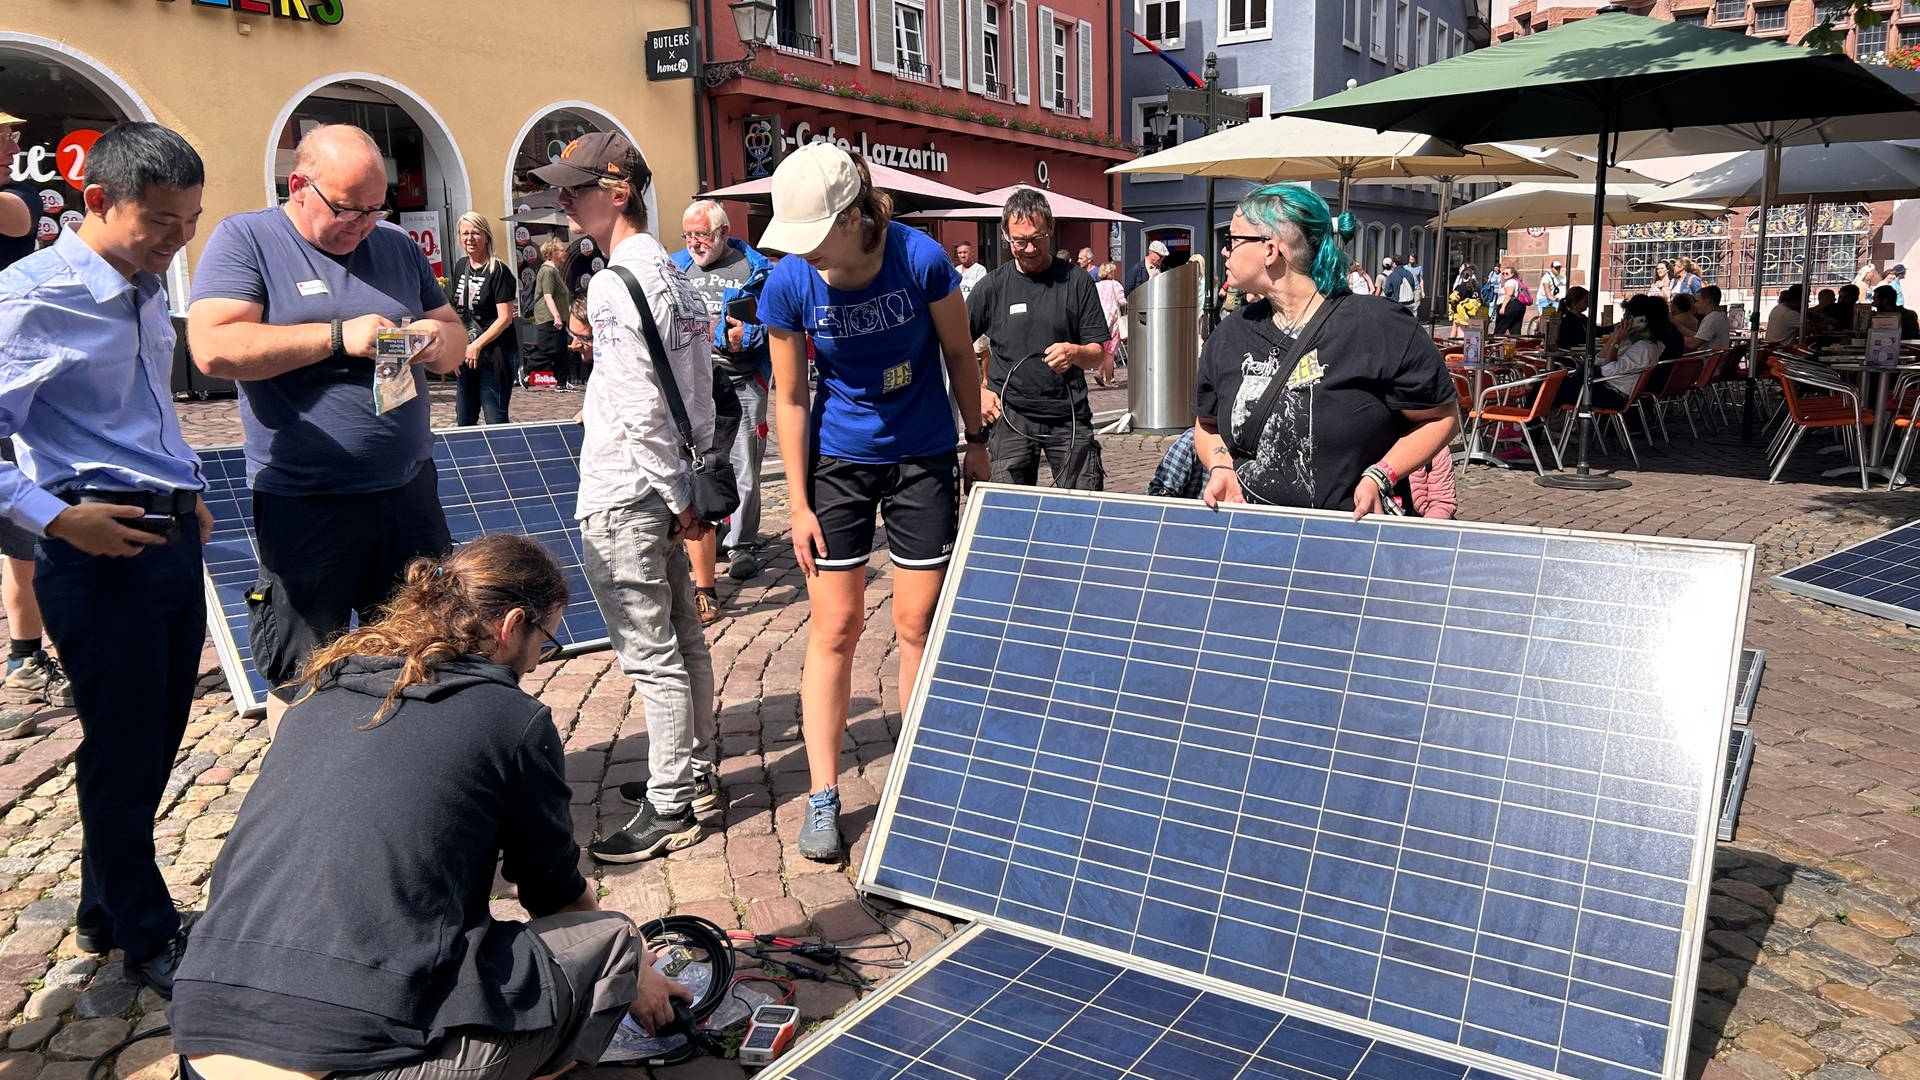 Rekordversuch: Freiburger Solar-Verein veranstaltet Massen-Upcycling